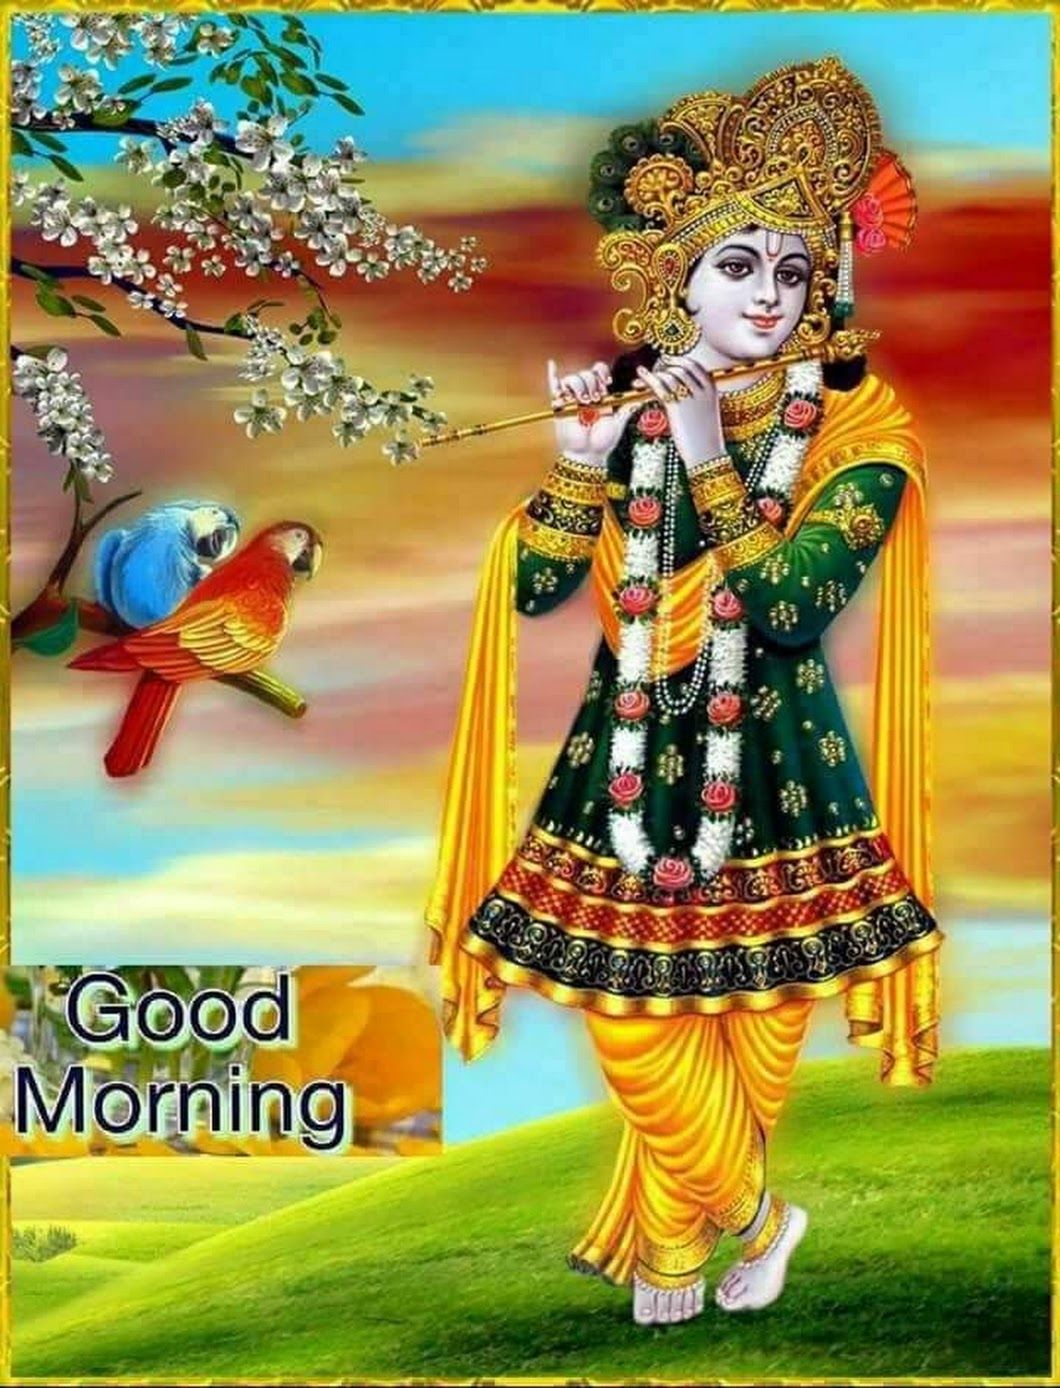 Davinder Paul Joshi Google Good Morning Krishna Lord